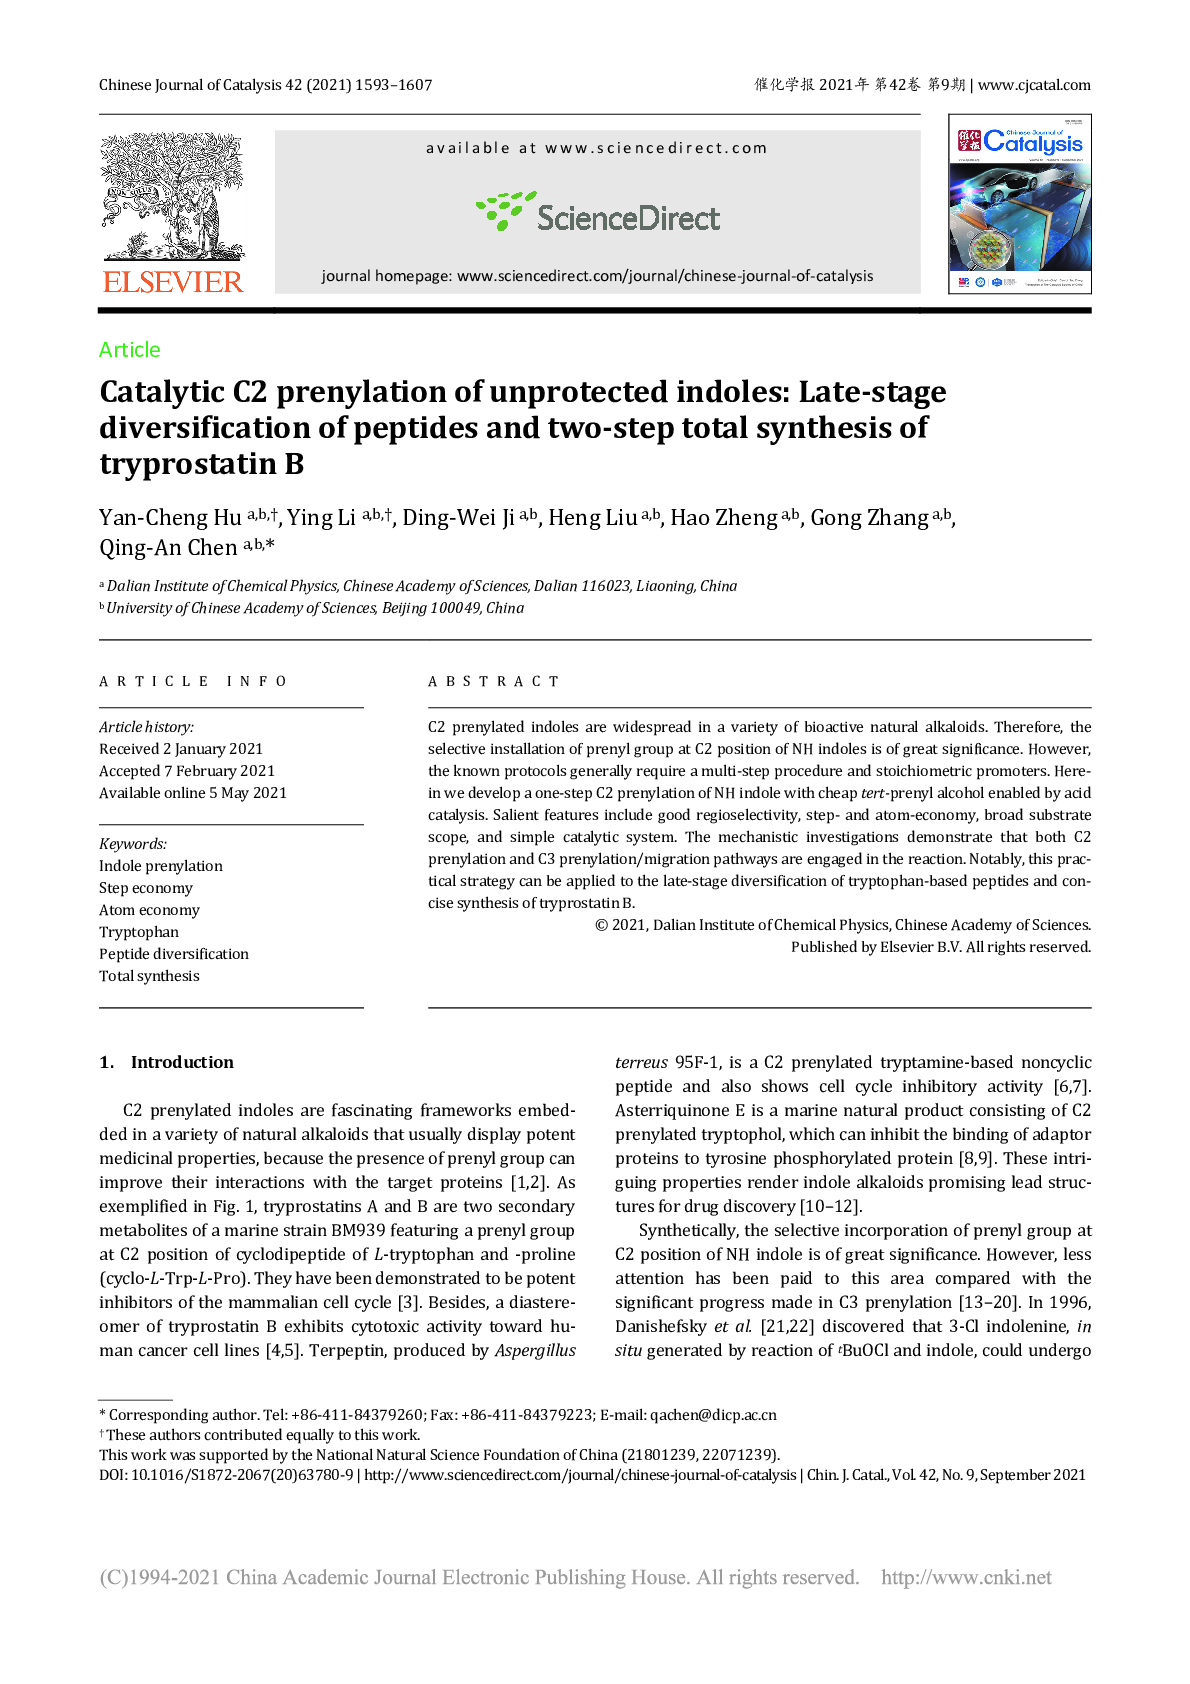 催化NH吲哚的C2异戊烯基化反应: 肽后期多样化和两步全合成tryprostatin B